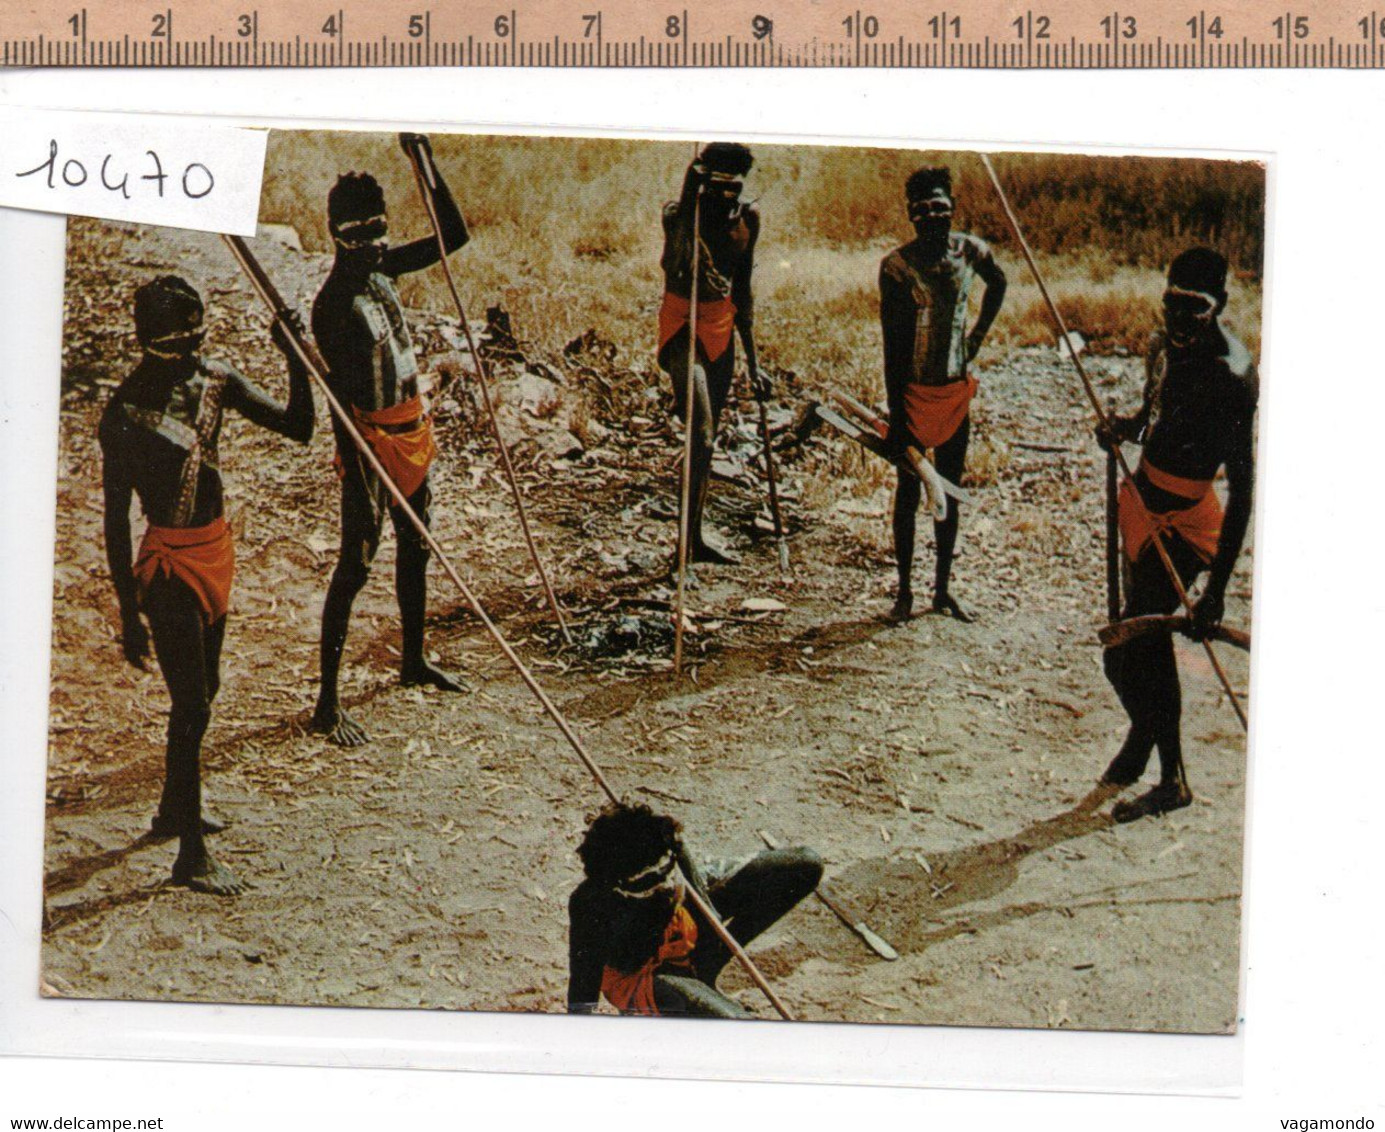 10470 ABORIGINALS NORTHERN TERRITORY - Aborigines